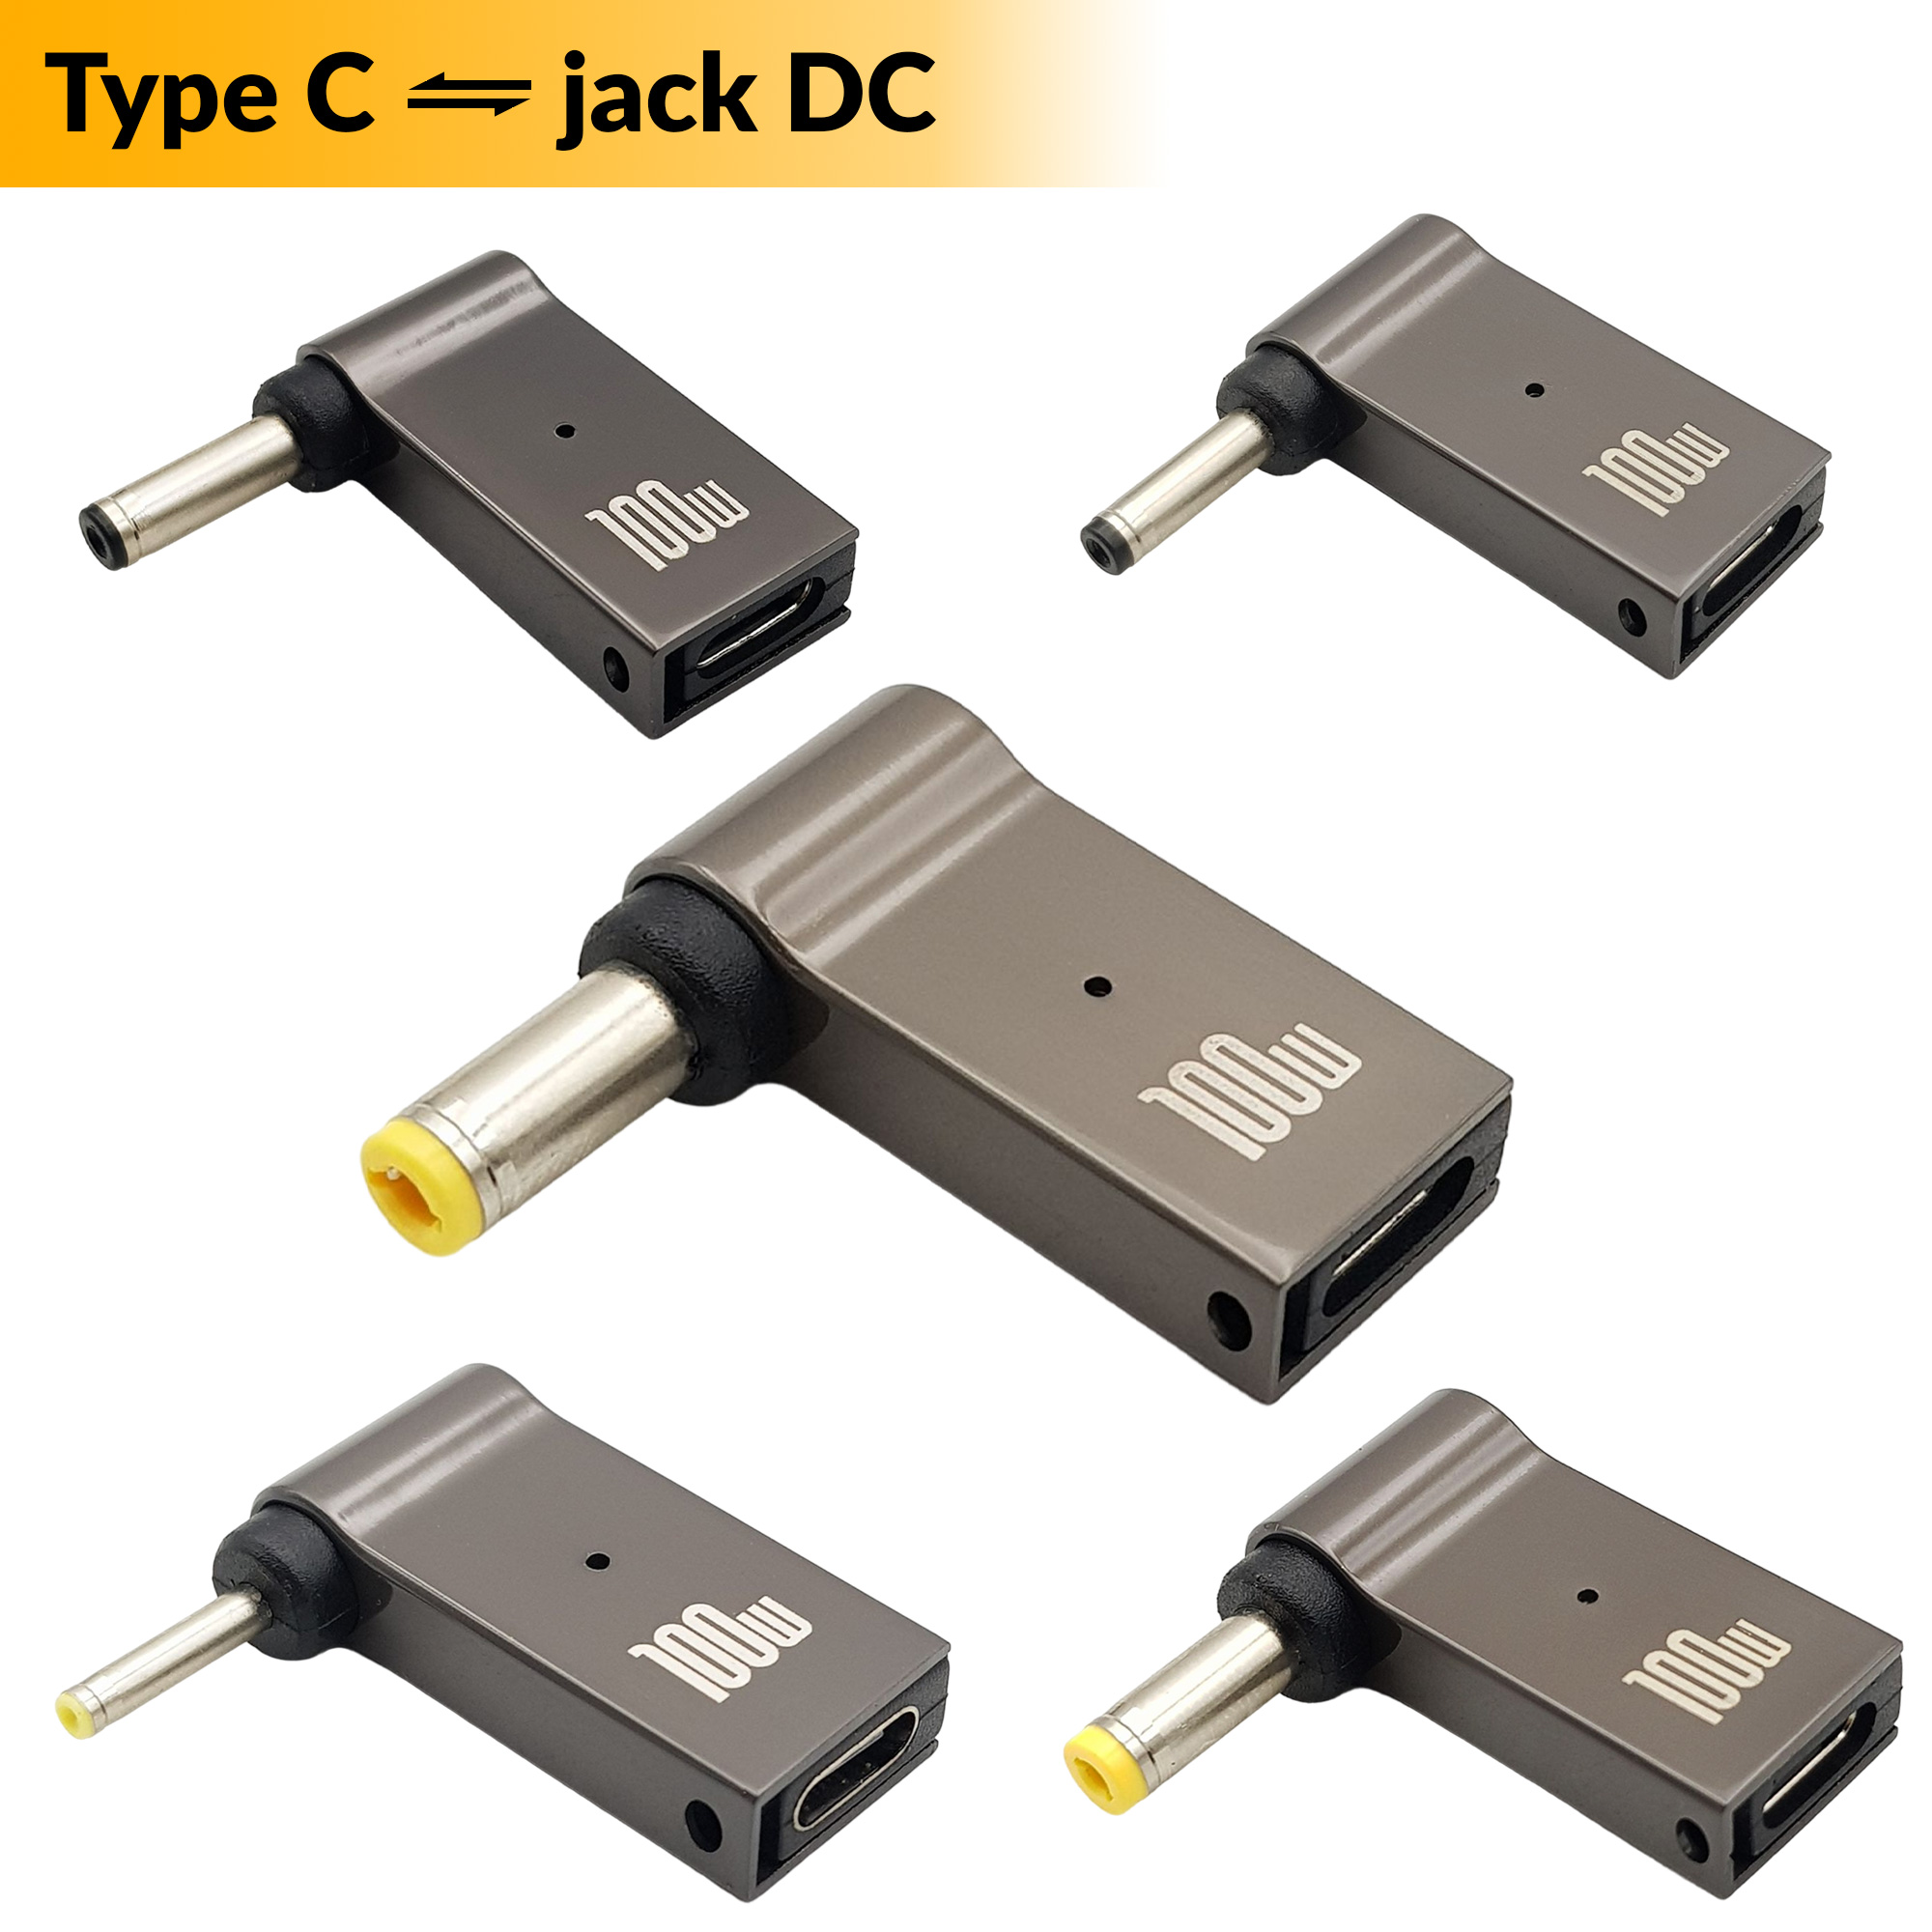 Đầu chuyển đổi sạc USB Type C sang Jack DC